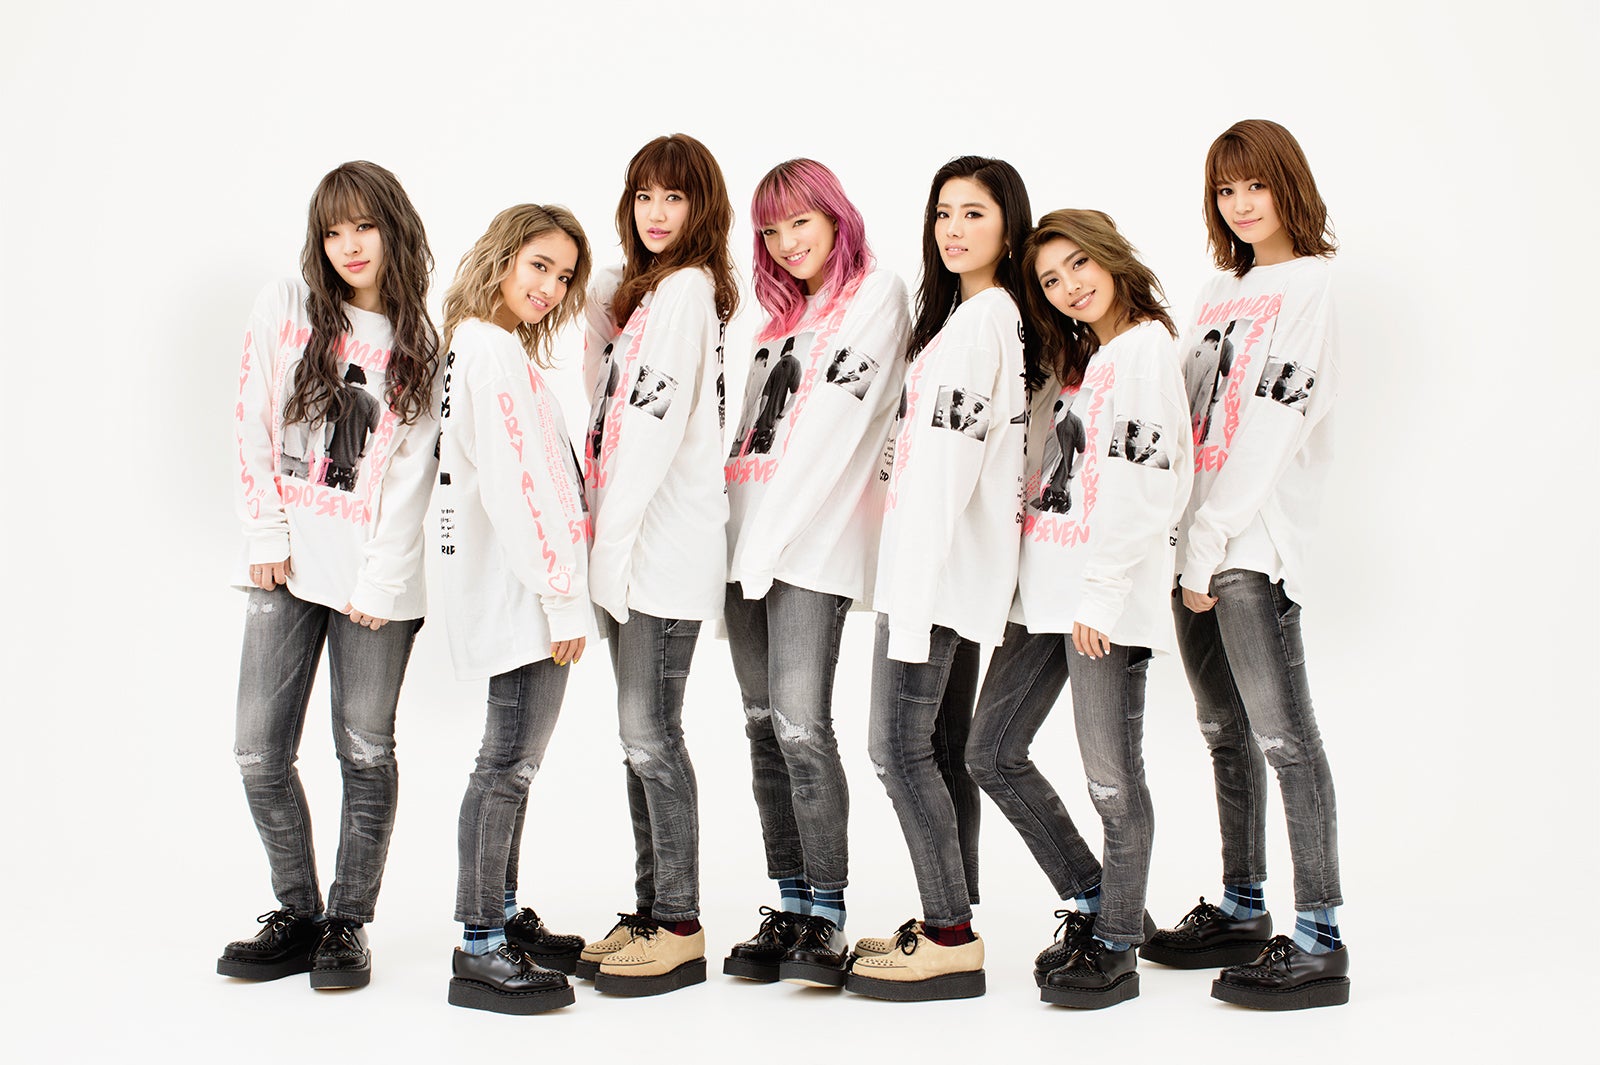 新生e Girls 始動 メンバー11人の魅力を解説 モデルプレス